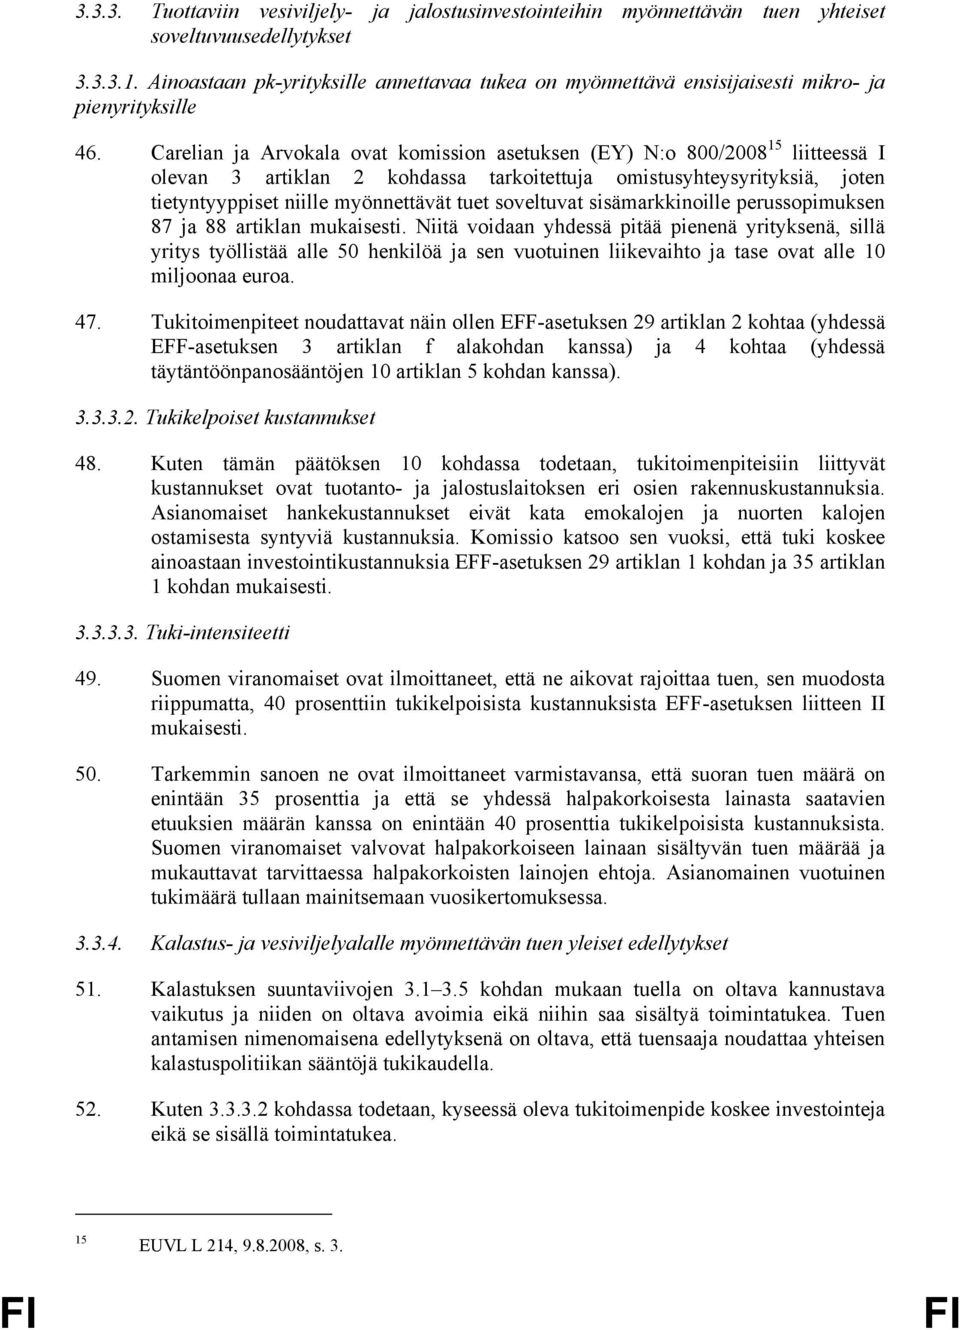 Carelian ja Arvokala ovat komission asetuksen (EY) N:o 800/2008 15 liitteessä I olevan 3 artiklan 2 kohdassa tarkoitettuja omistusyhteysyrityksiä, joten tietyntyyppiset niille myönnettävät tuet